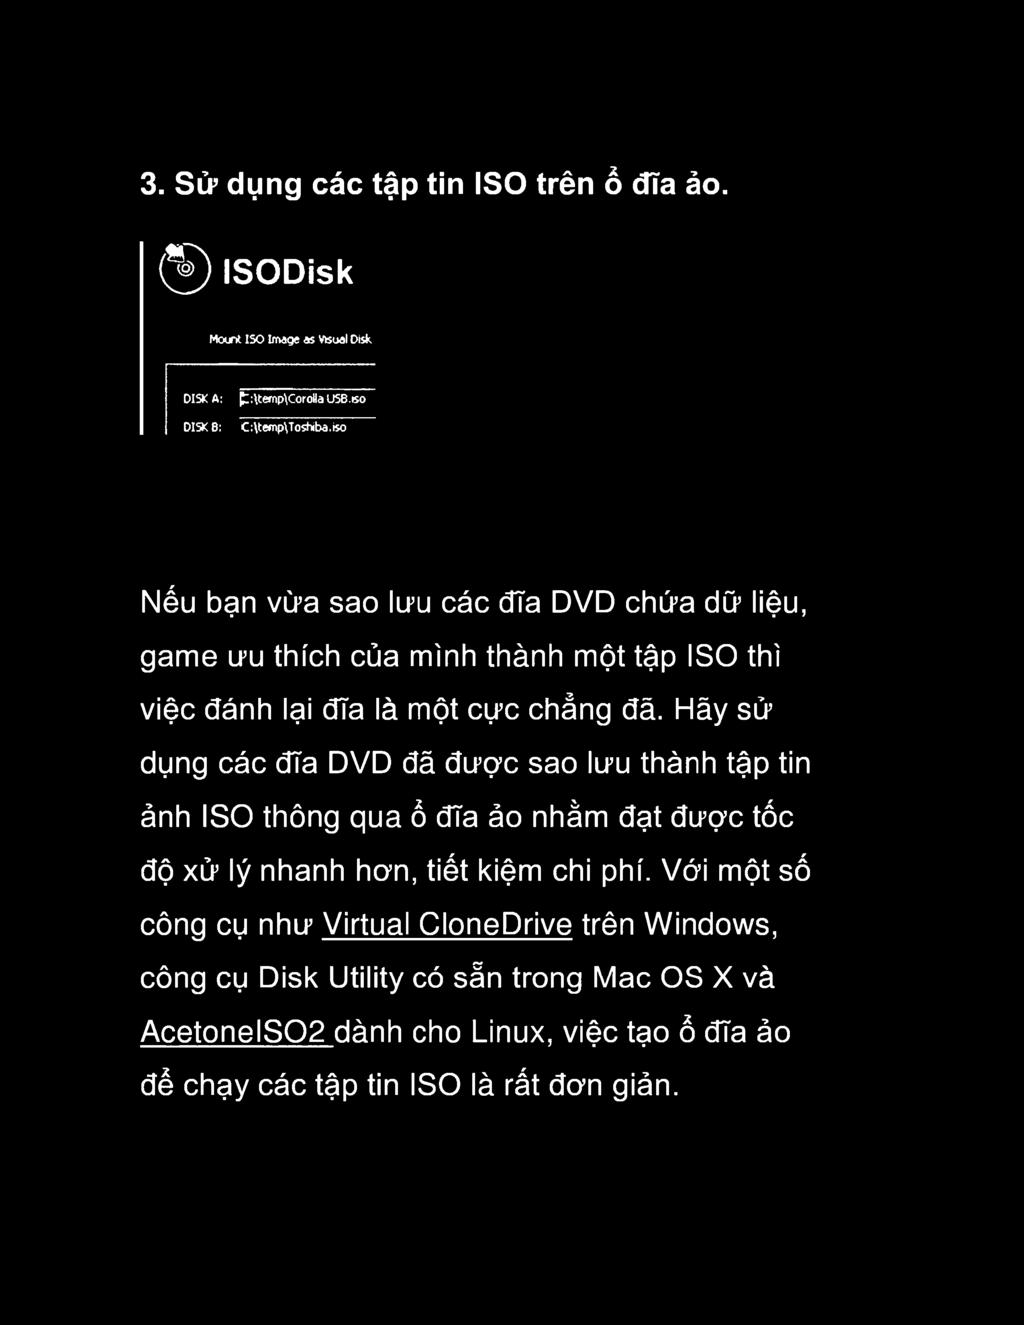 Hãy sử dụng các đĩa DVD đã được sao lưu thành tập tin ảnh ISO thông qua ổ đĩa ảo nhằm đạt được tốc